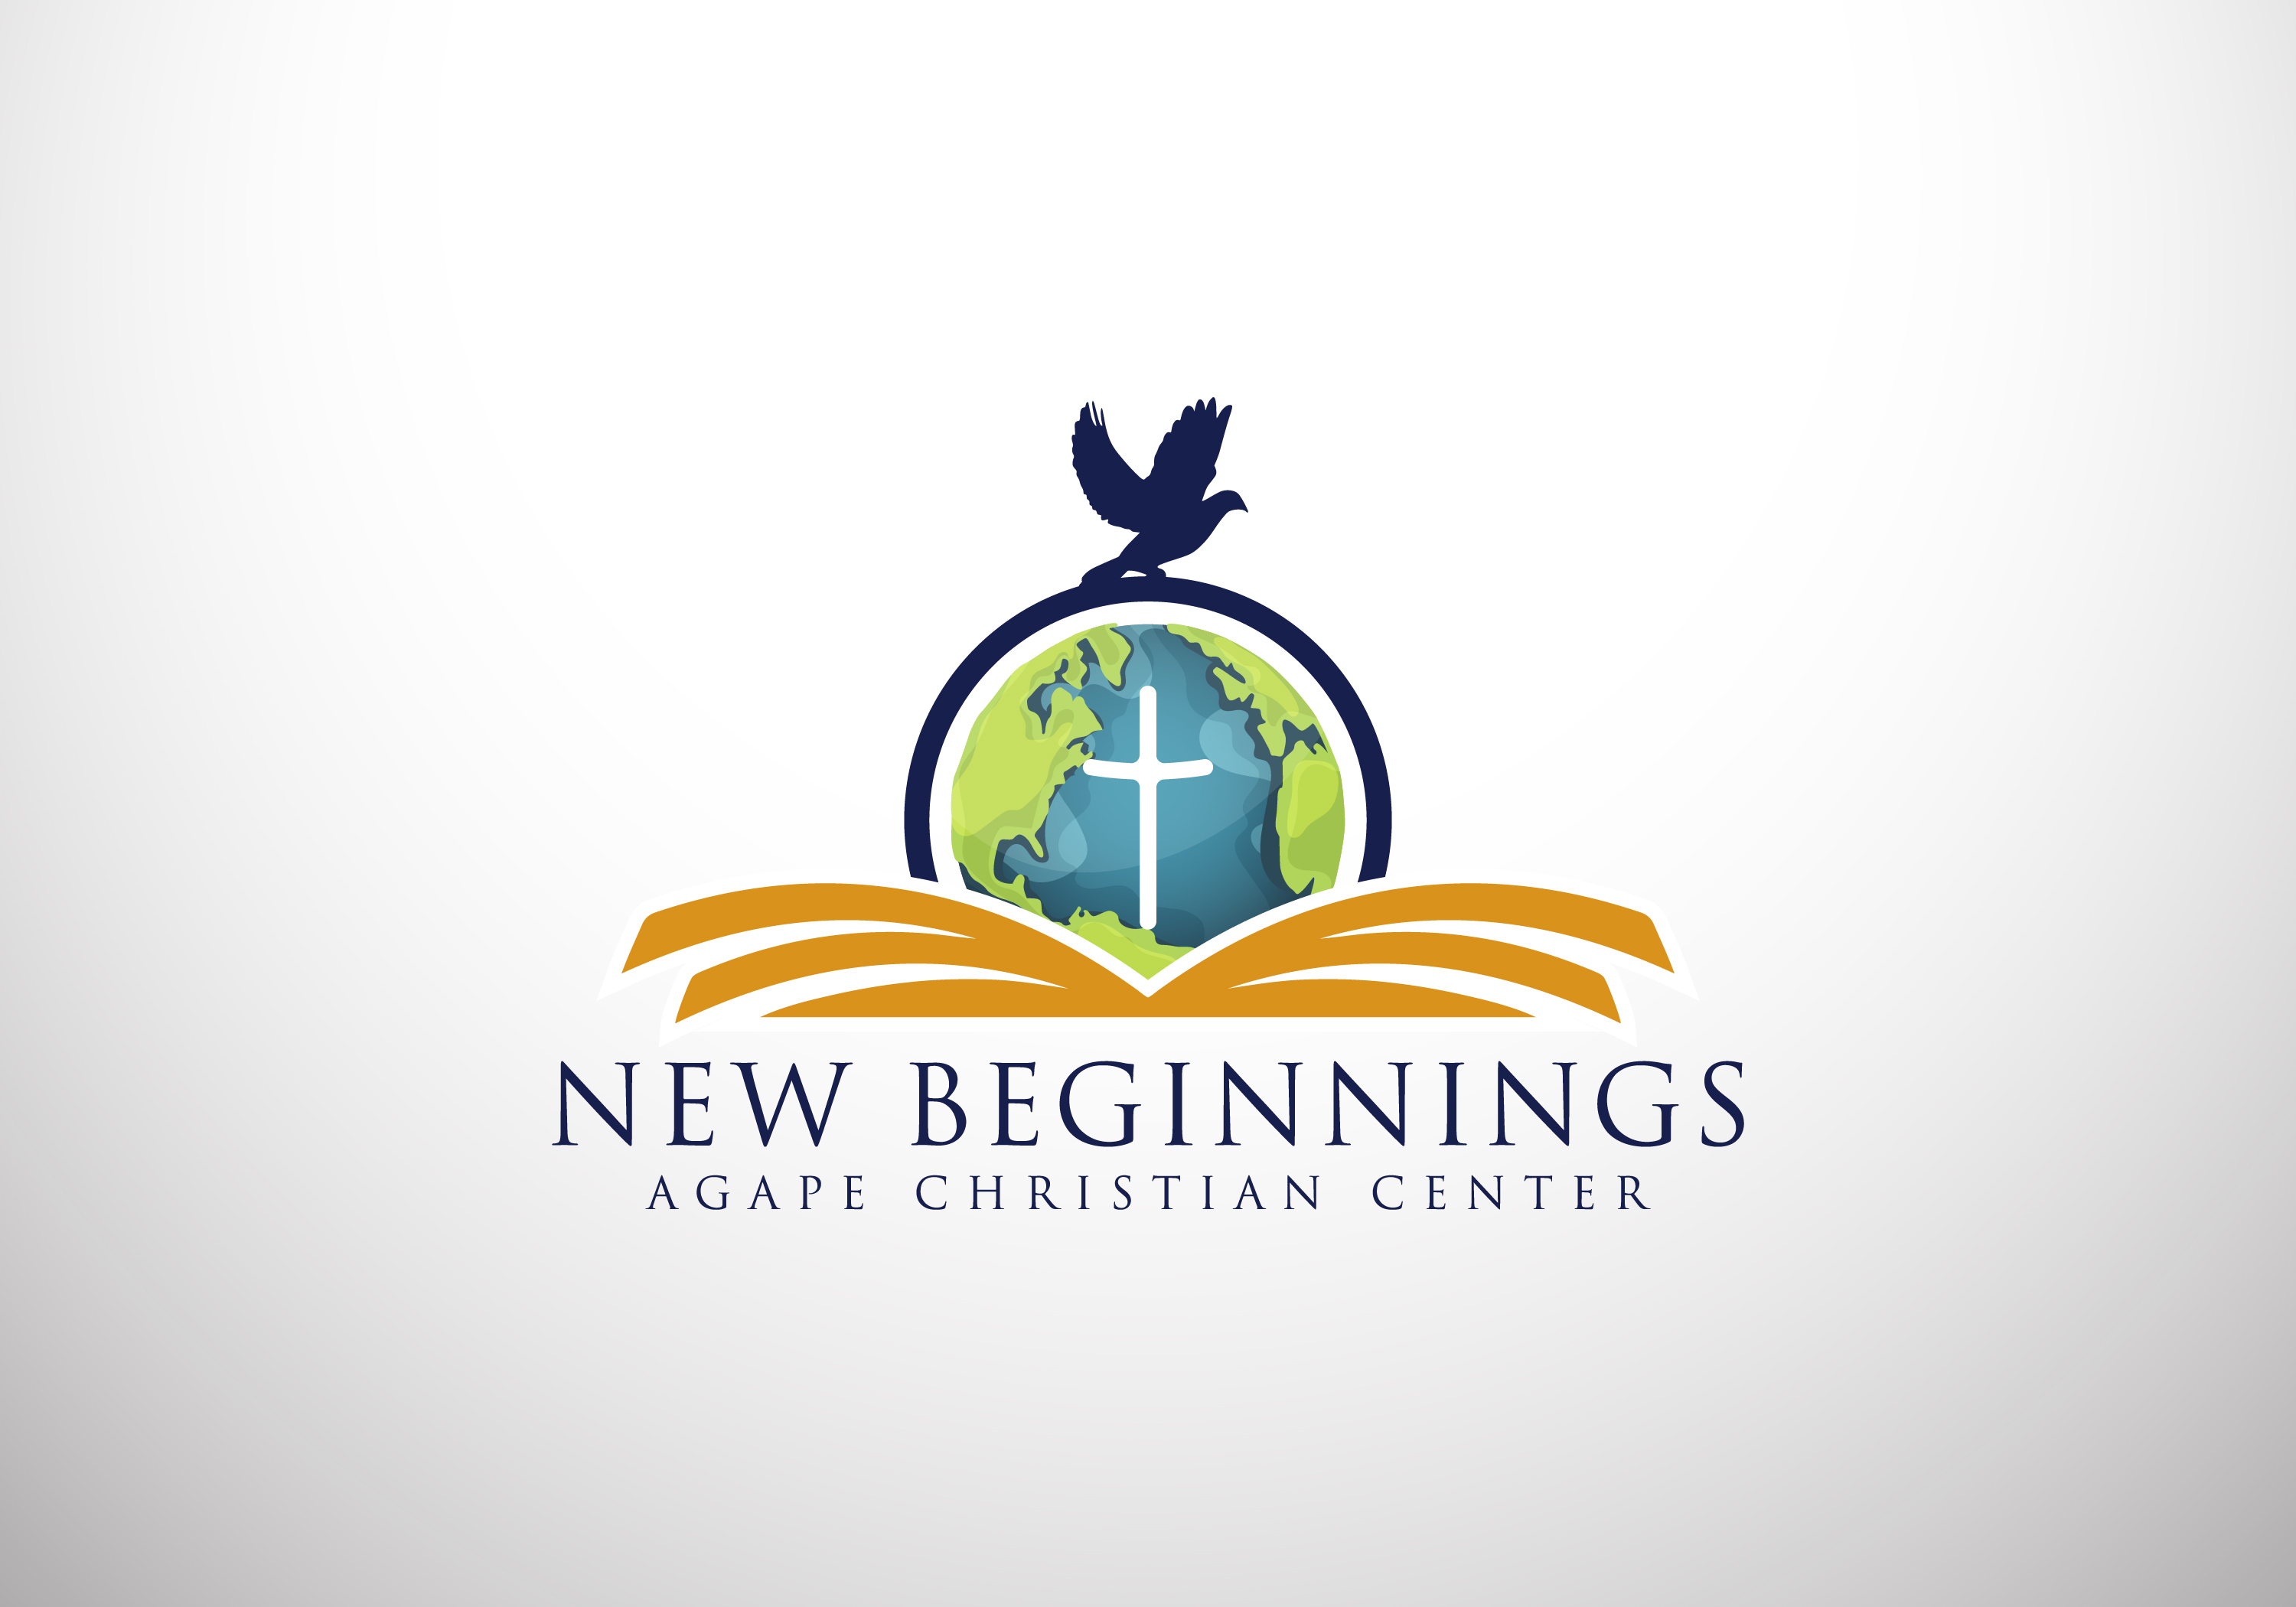 New Beginnings Agape Christian Center